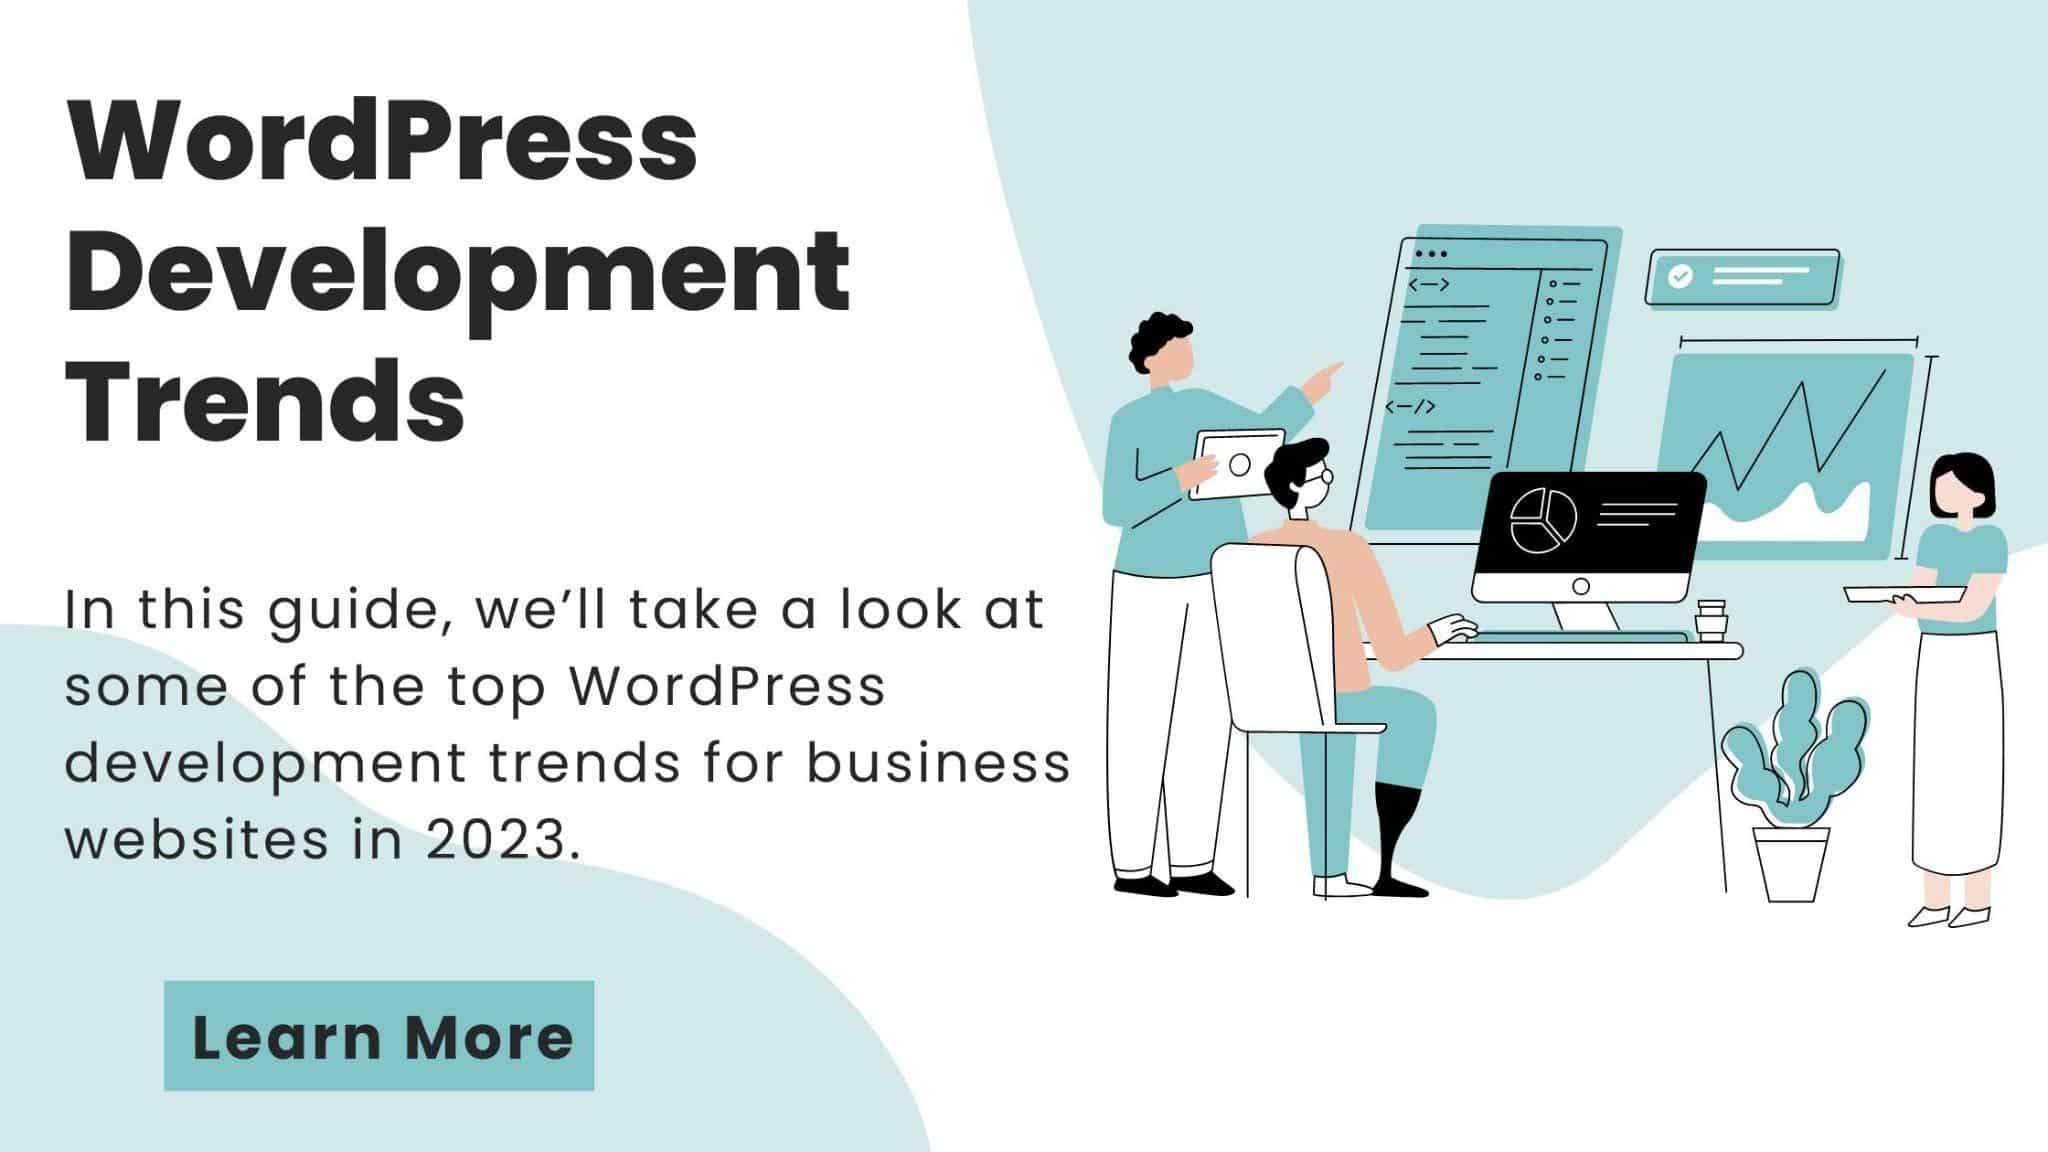 WordPress Development Trends for Business Websites in 2023